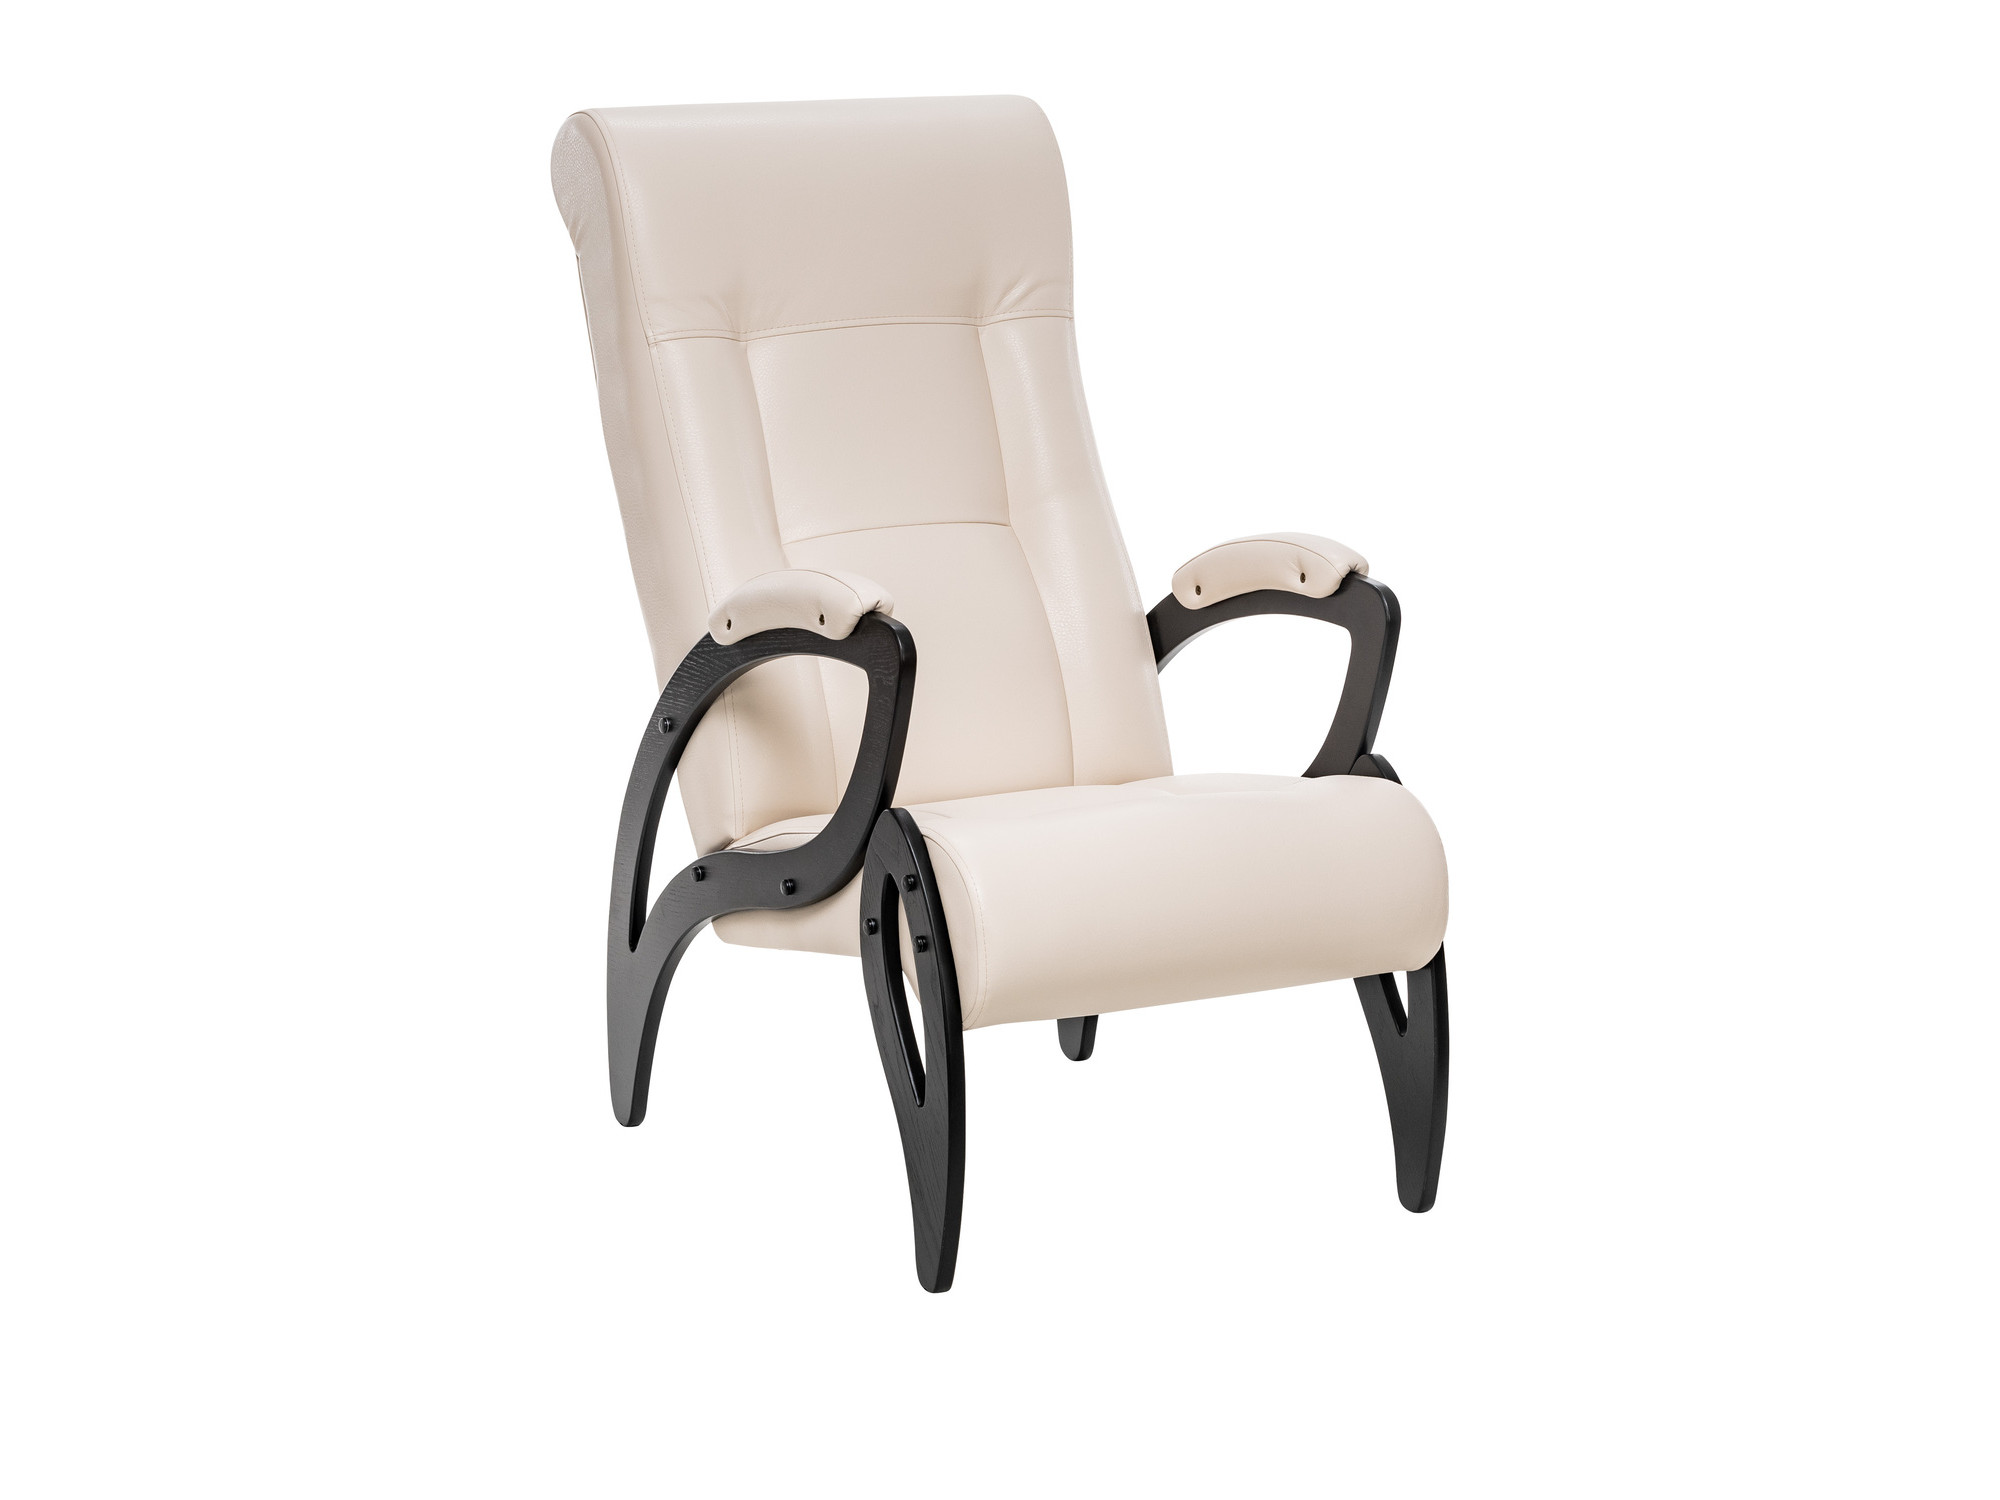 Кресло для отдыха Модель 51 MebelVia Polaris Beige, Экокожа, покрыта эмалью, Берёзовая фанера кресло качалка модель 67 венге к з polaris beige mebelvia polaris beige экокожа фанера шпон лак